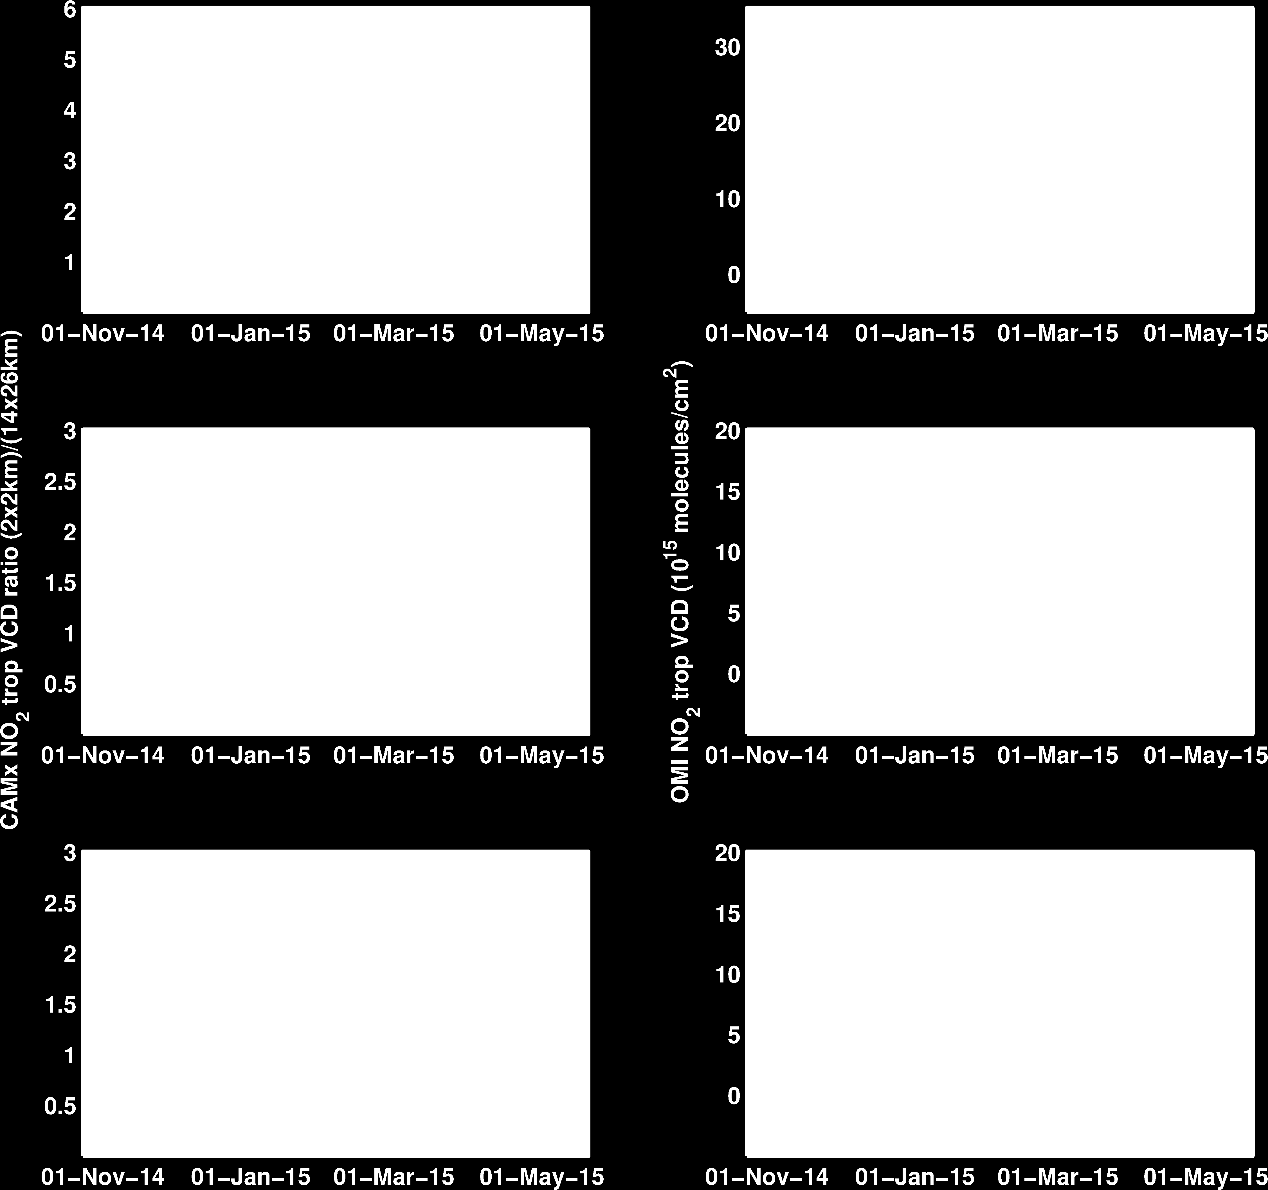 Δορυφορικές παρατηρήσεις της τροποσφαιρικής στήλης του ΝΟ 2 σε κάθε θέση μέτρησης, πριν και μετά την ανακατασκευή τους με την βοήθεια του CAMx (δεξιά).